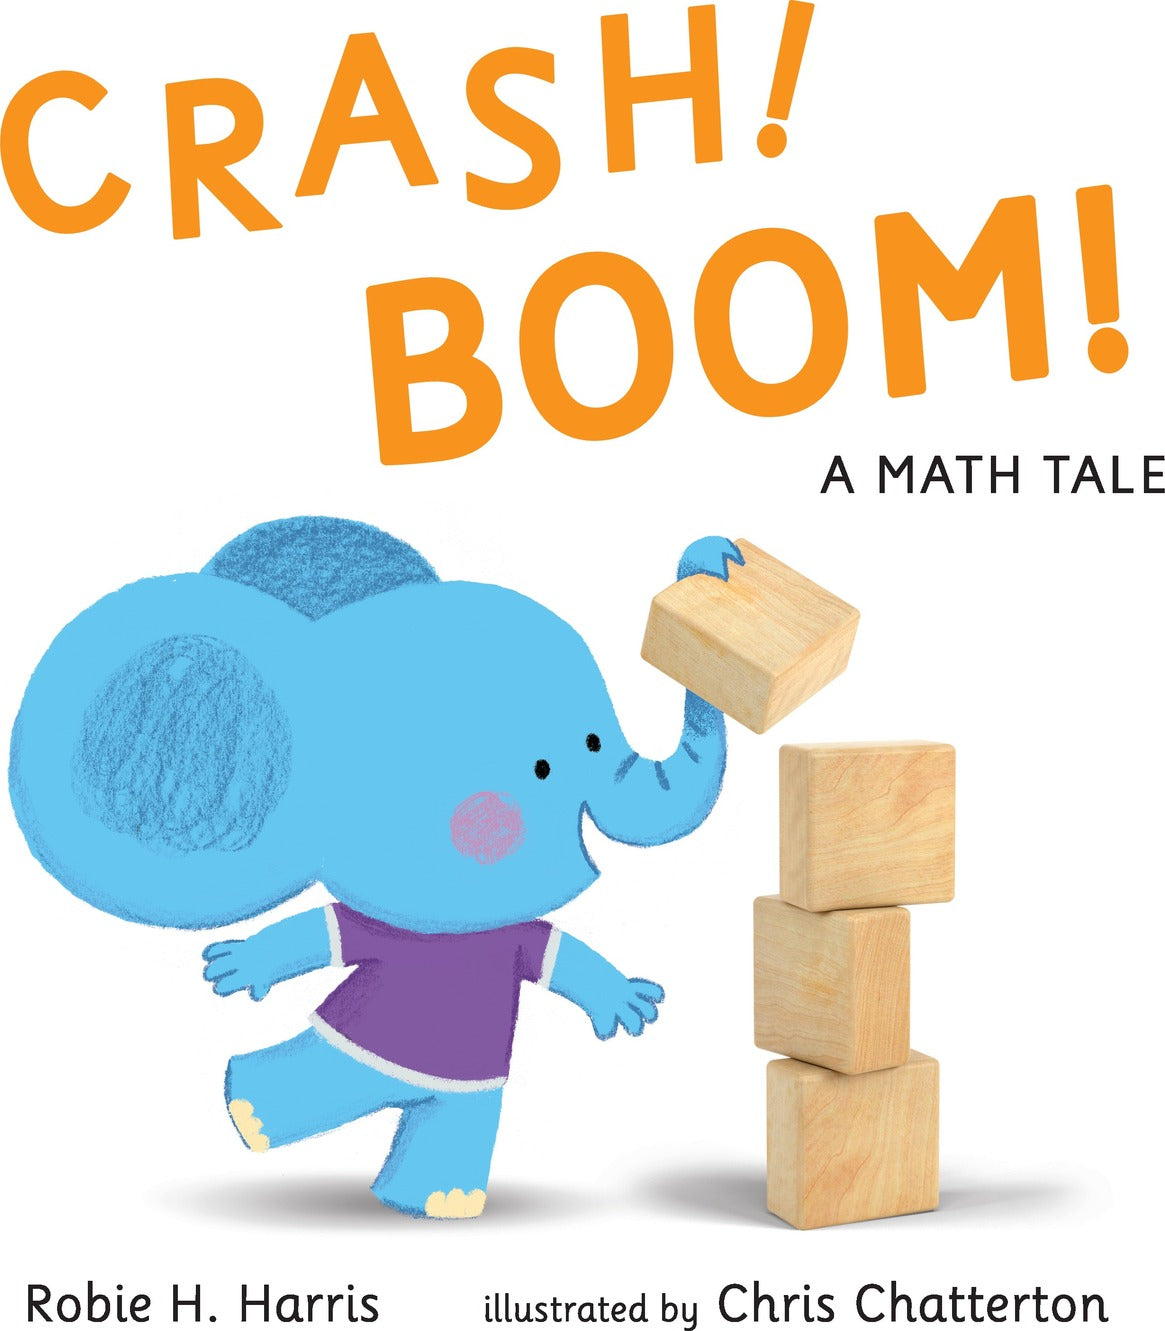 CRASH! BOOM! A Math Tale